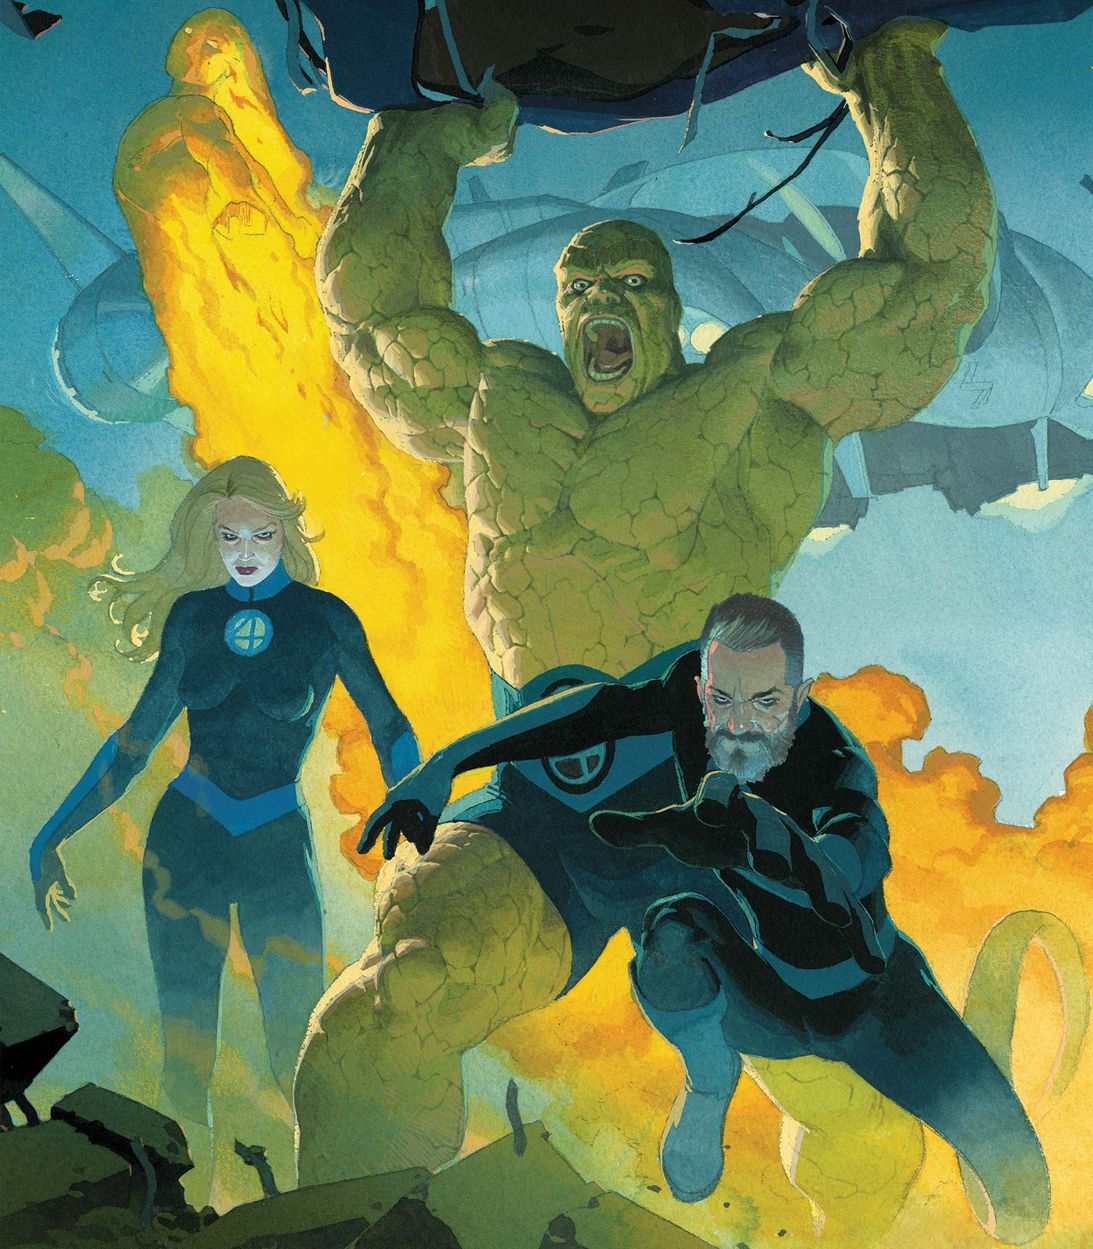 Fantastic Four #1 by Esad Ribic